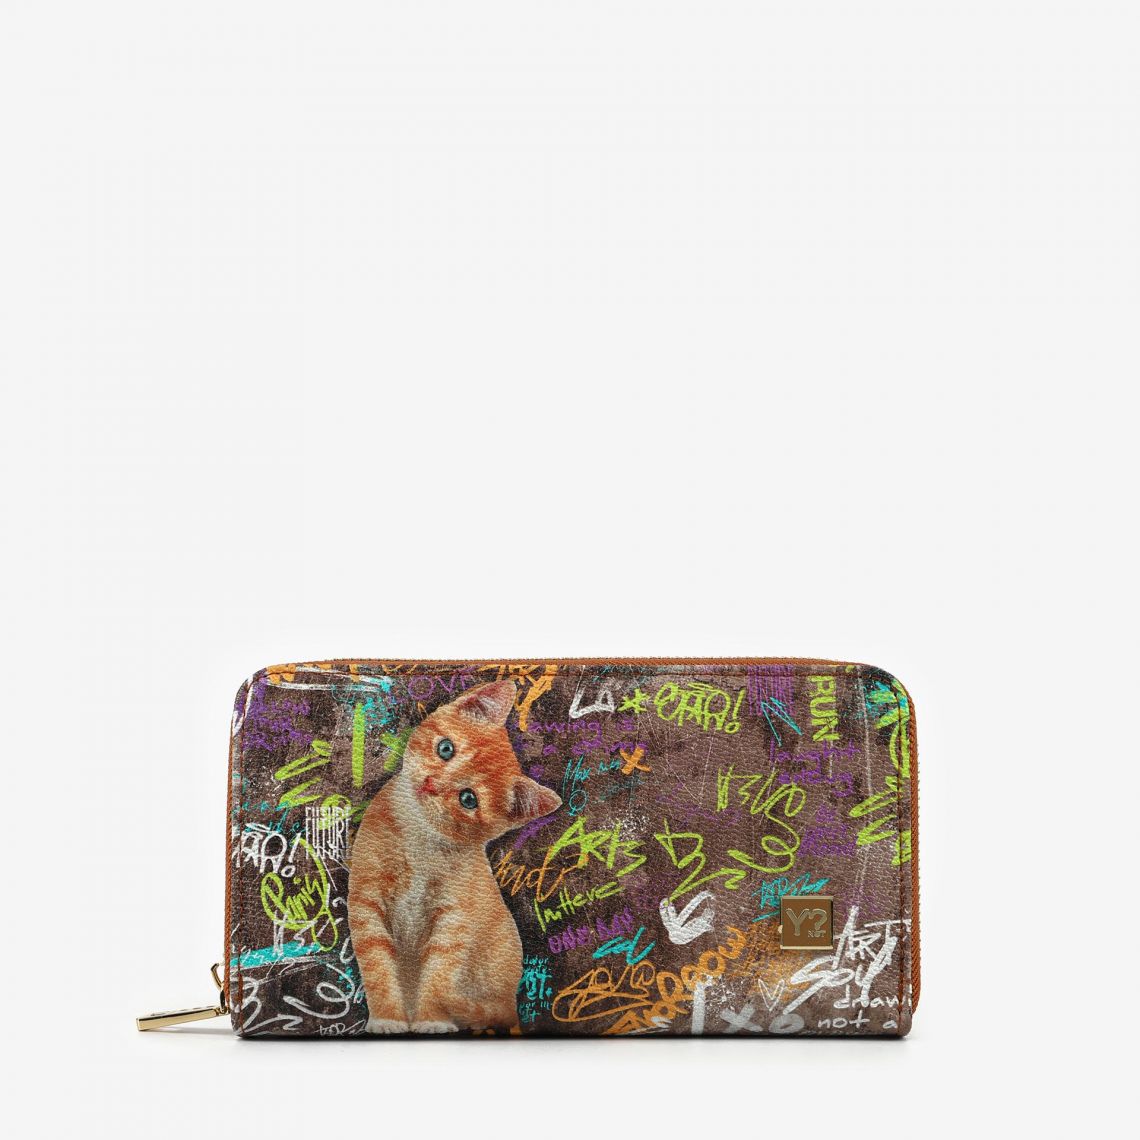 (image for) Portafogli Cat Wall borse online shop